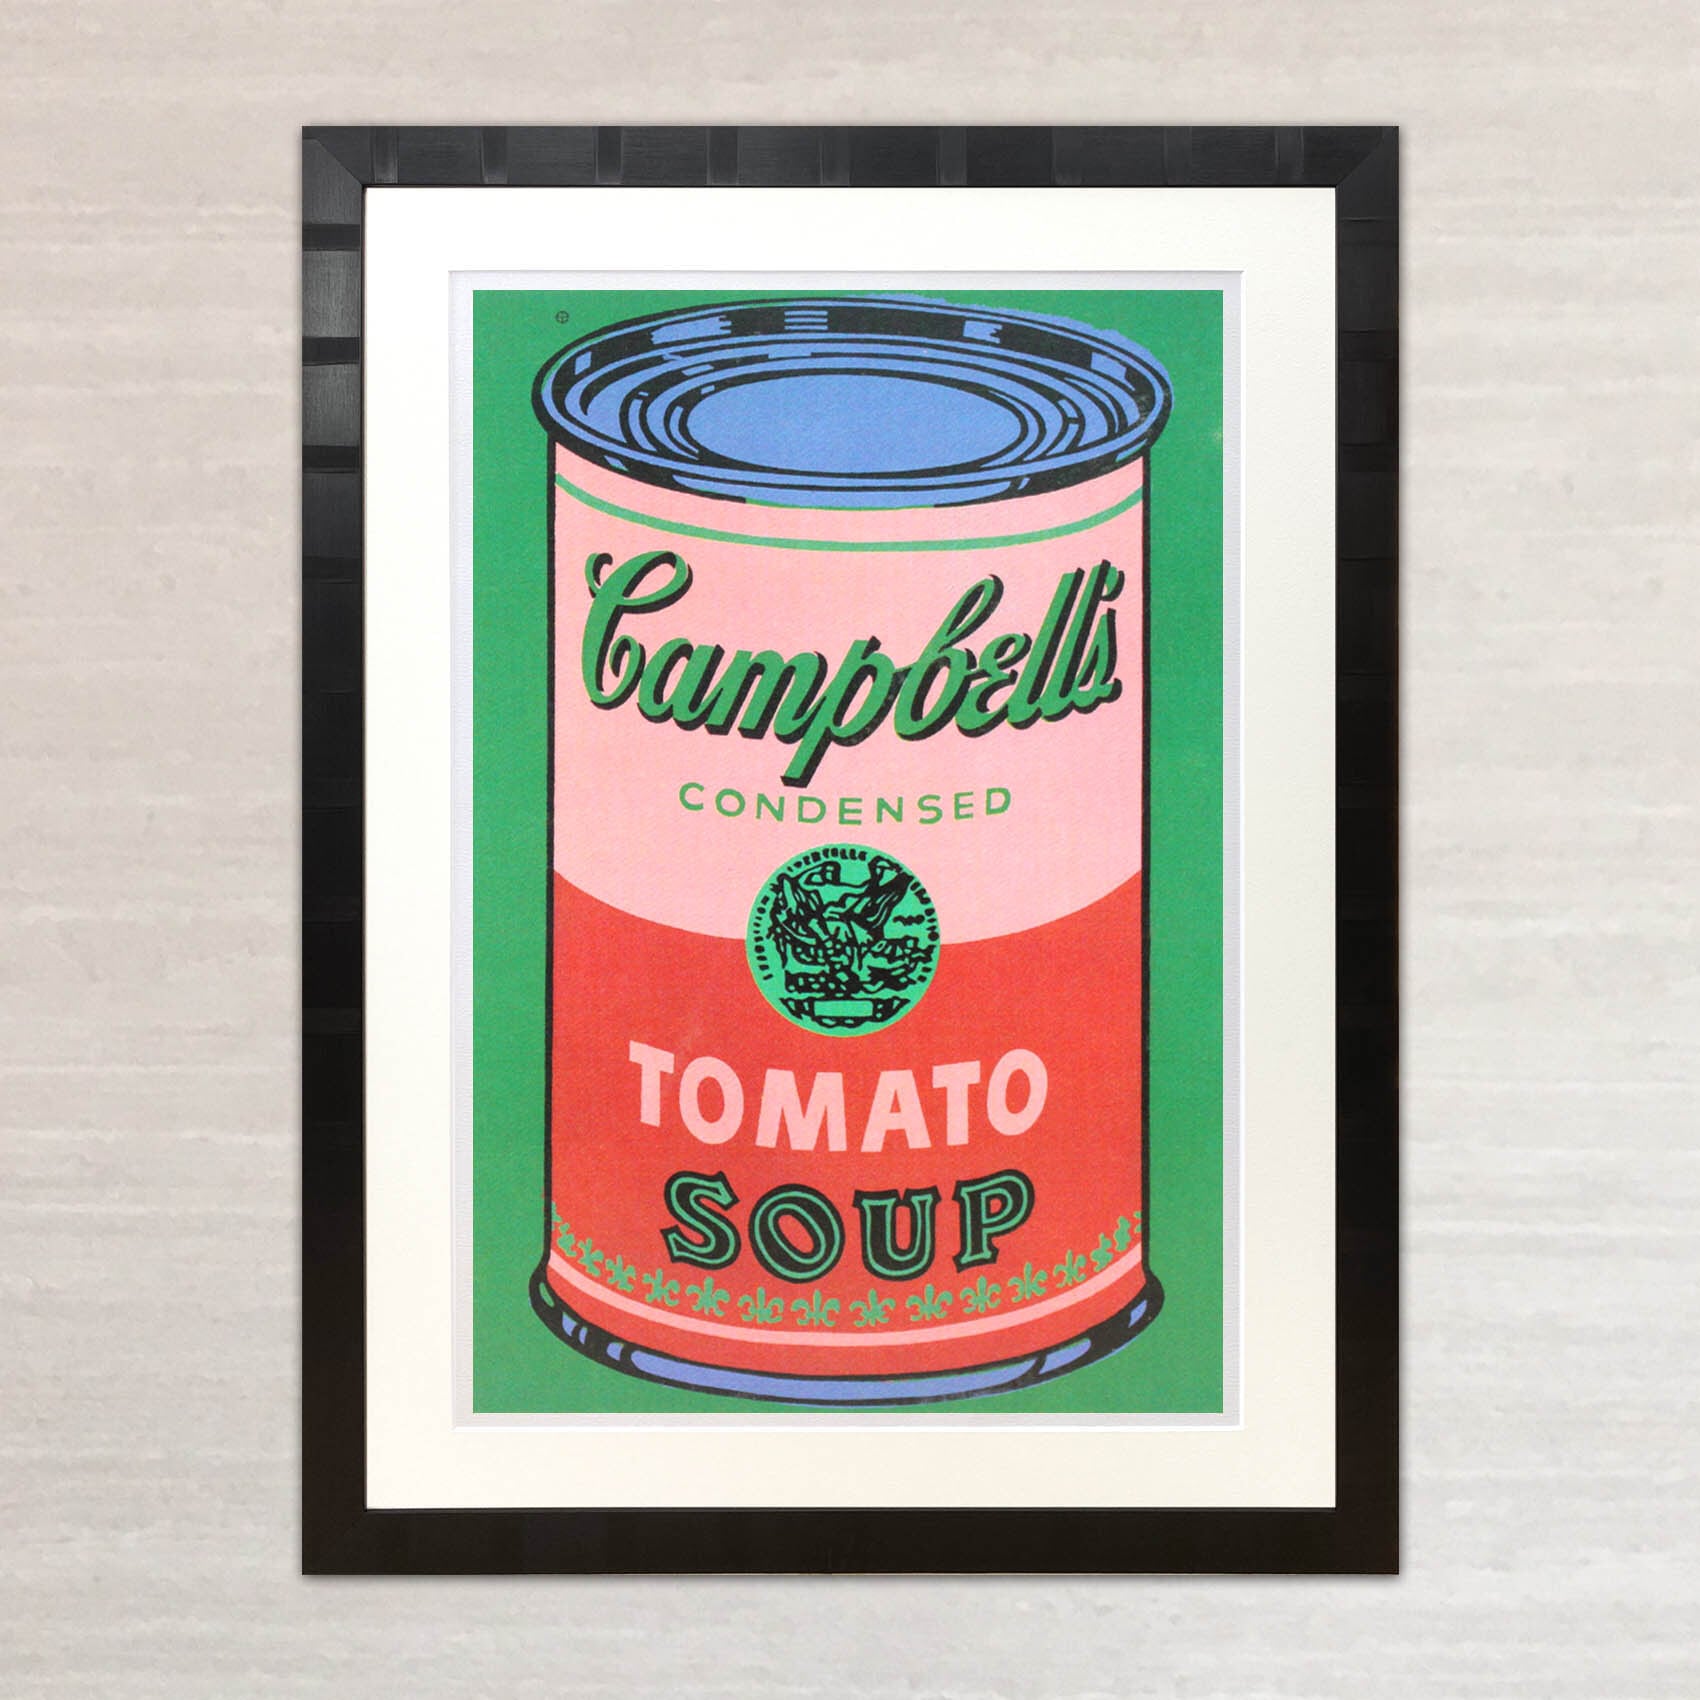 アンディ・ウォーホル「キャンベル・スープ(トマト/レッド&グリーン)1965」展示用フック付大型サイズジークレ ポップアート 絵画